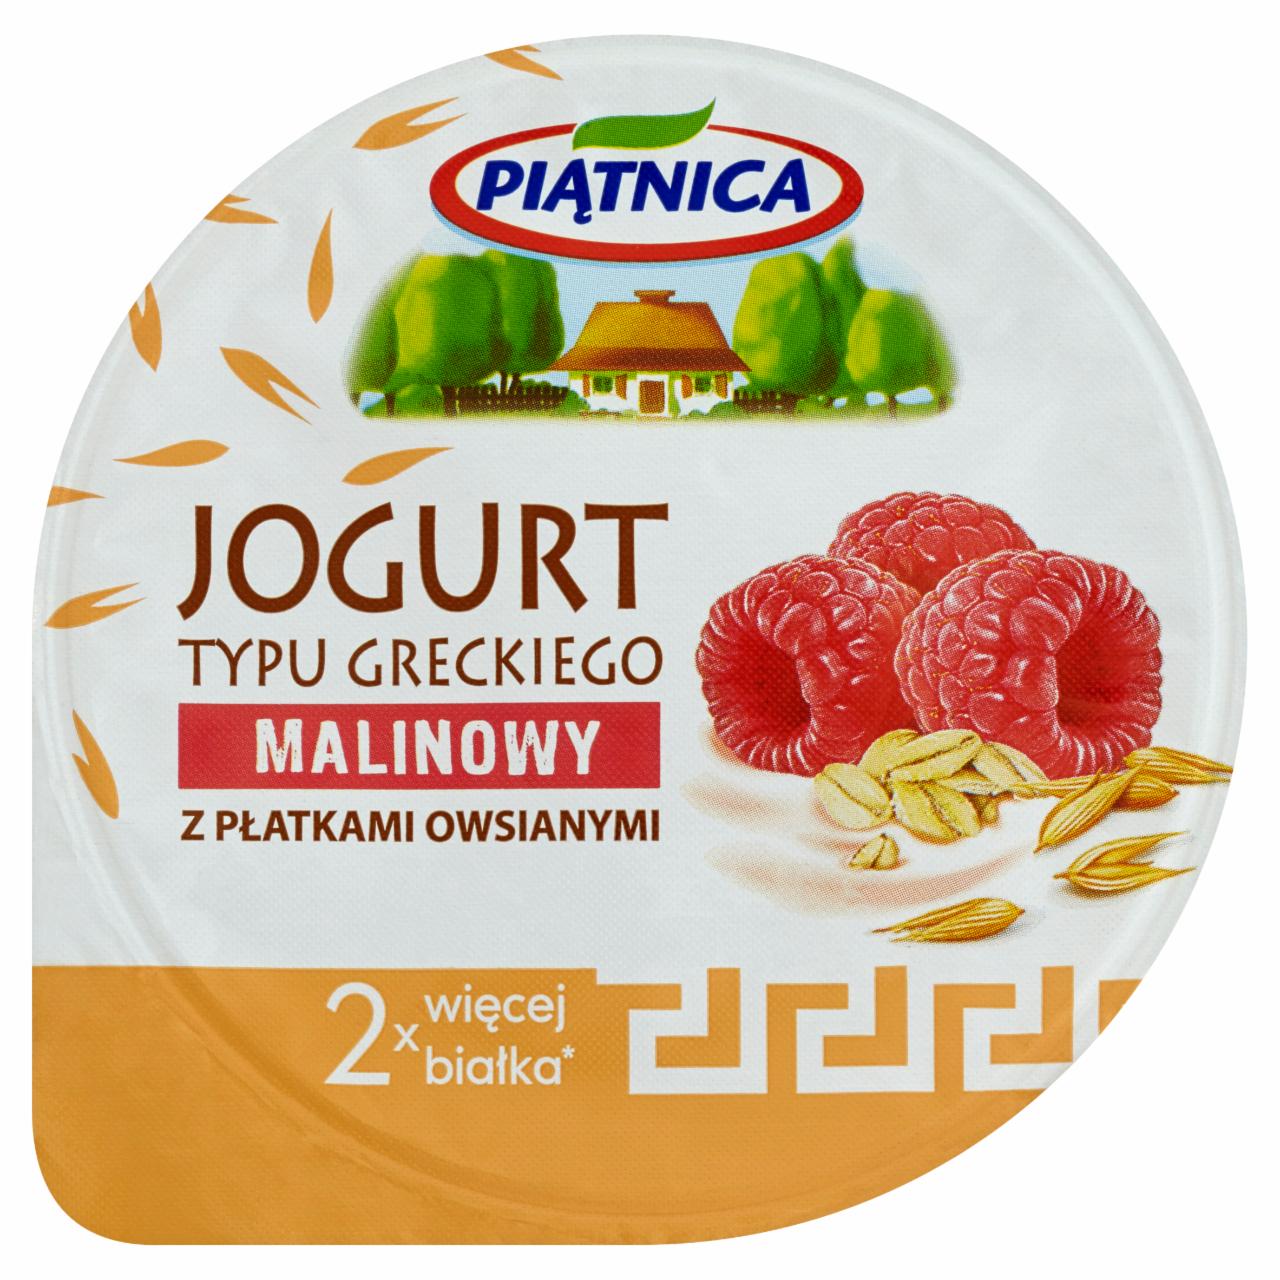 Zdjęcia - Piątnica Jogurt typu greckiego malinowy z płatkami owsianymi 150 g